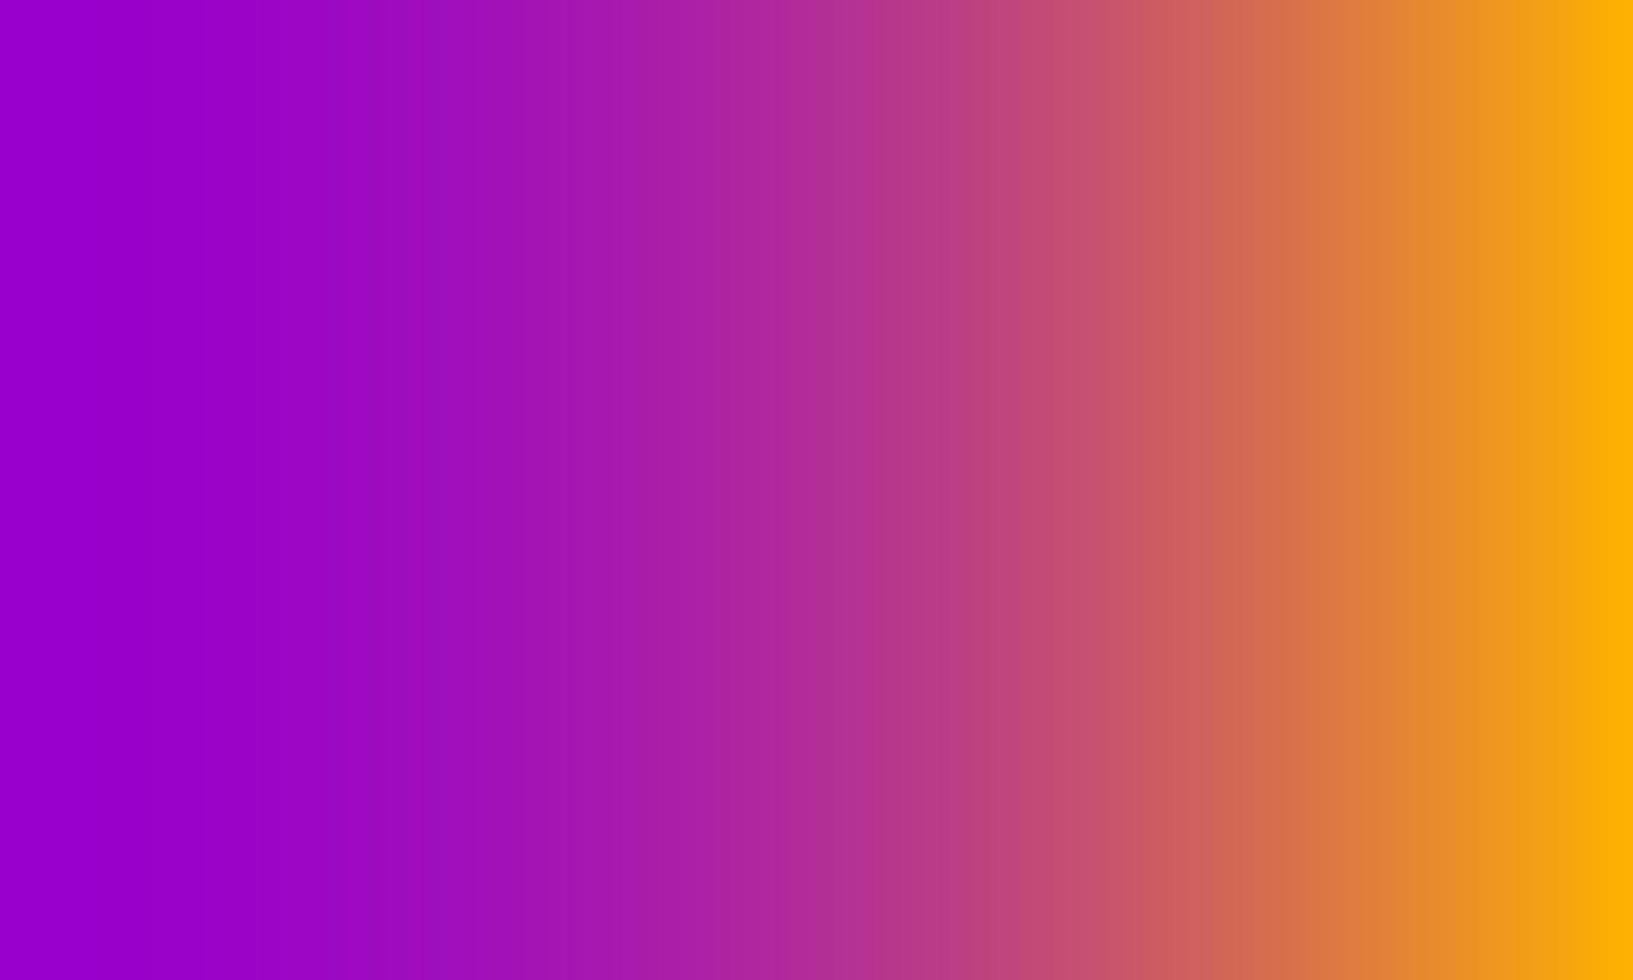 púrpura degradado y naranja pastel. estilo abstracto, colorido, sencillo, alegre y limpio. adecuado para copiar espacio, papel tapiz, fondo, textura, pancarta, volante o decoración vector